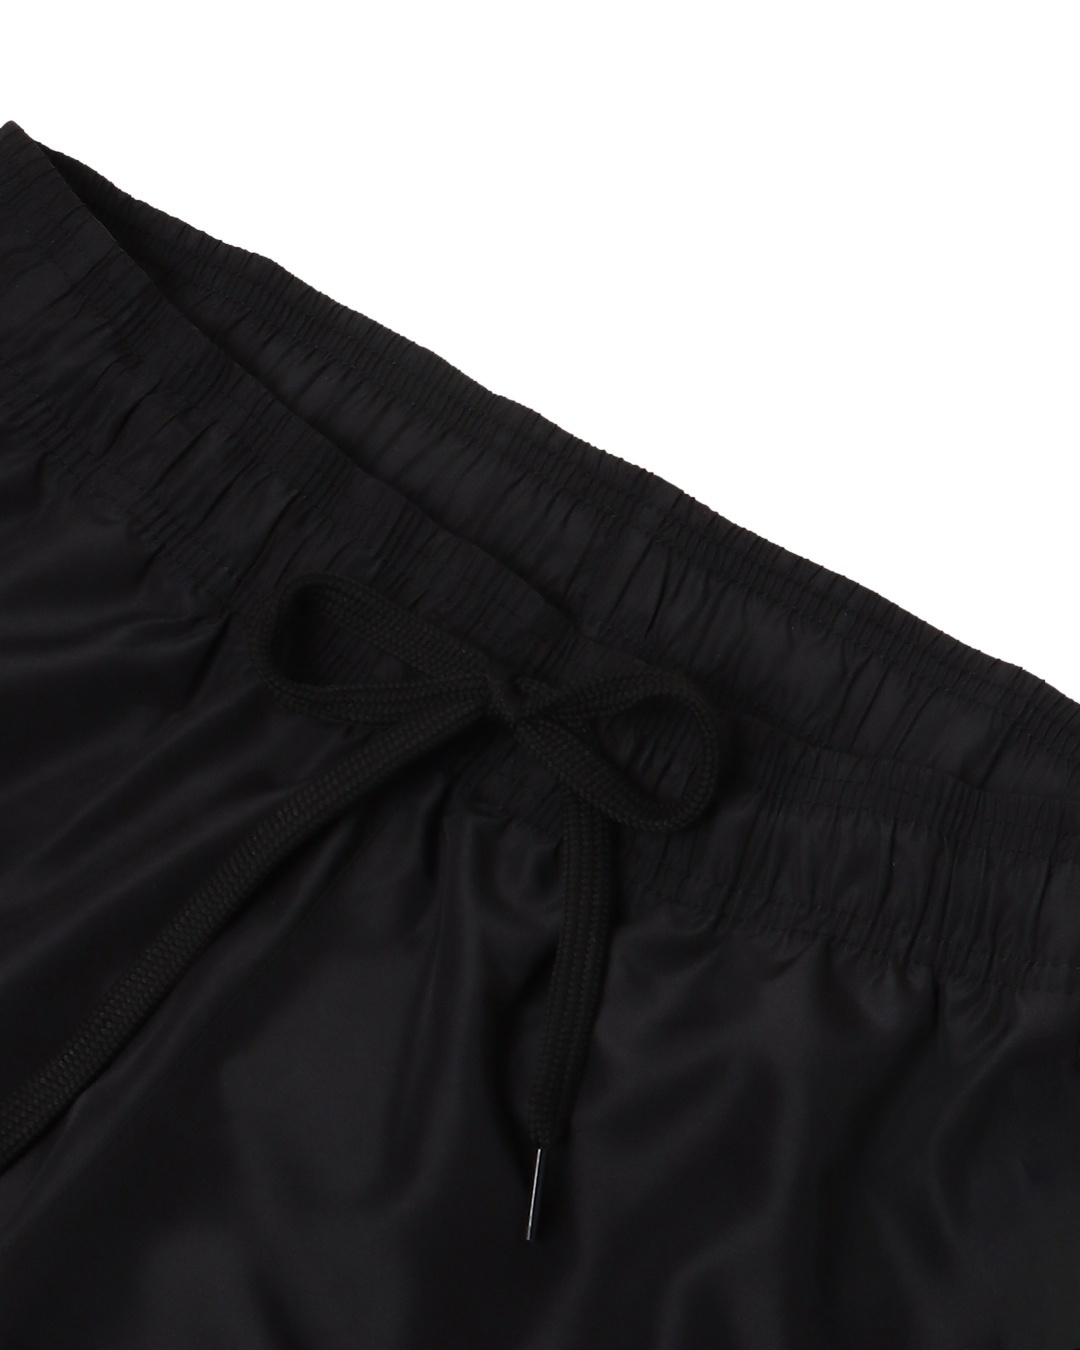 Shop Men's Black Utility Shorts